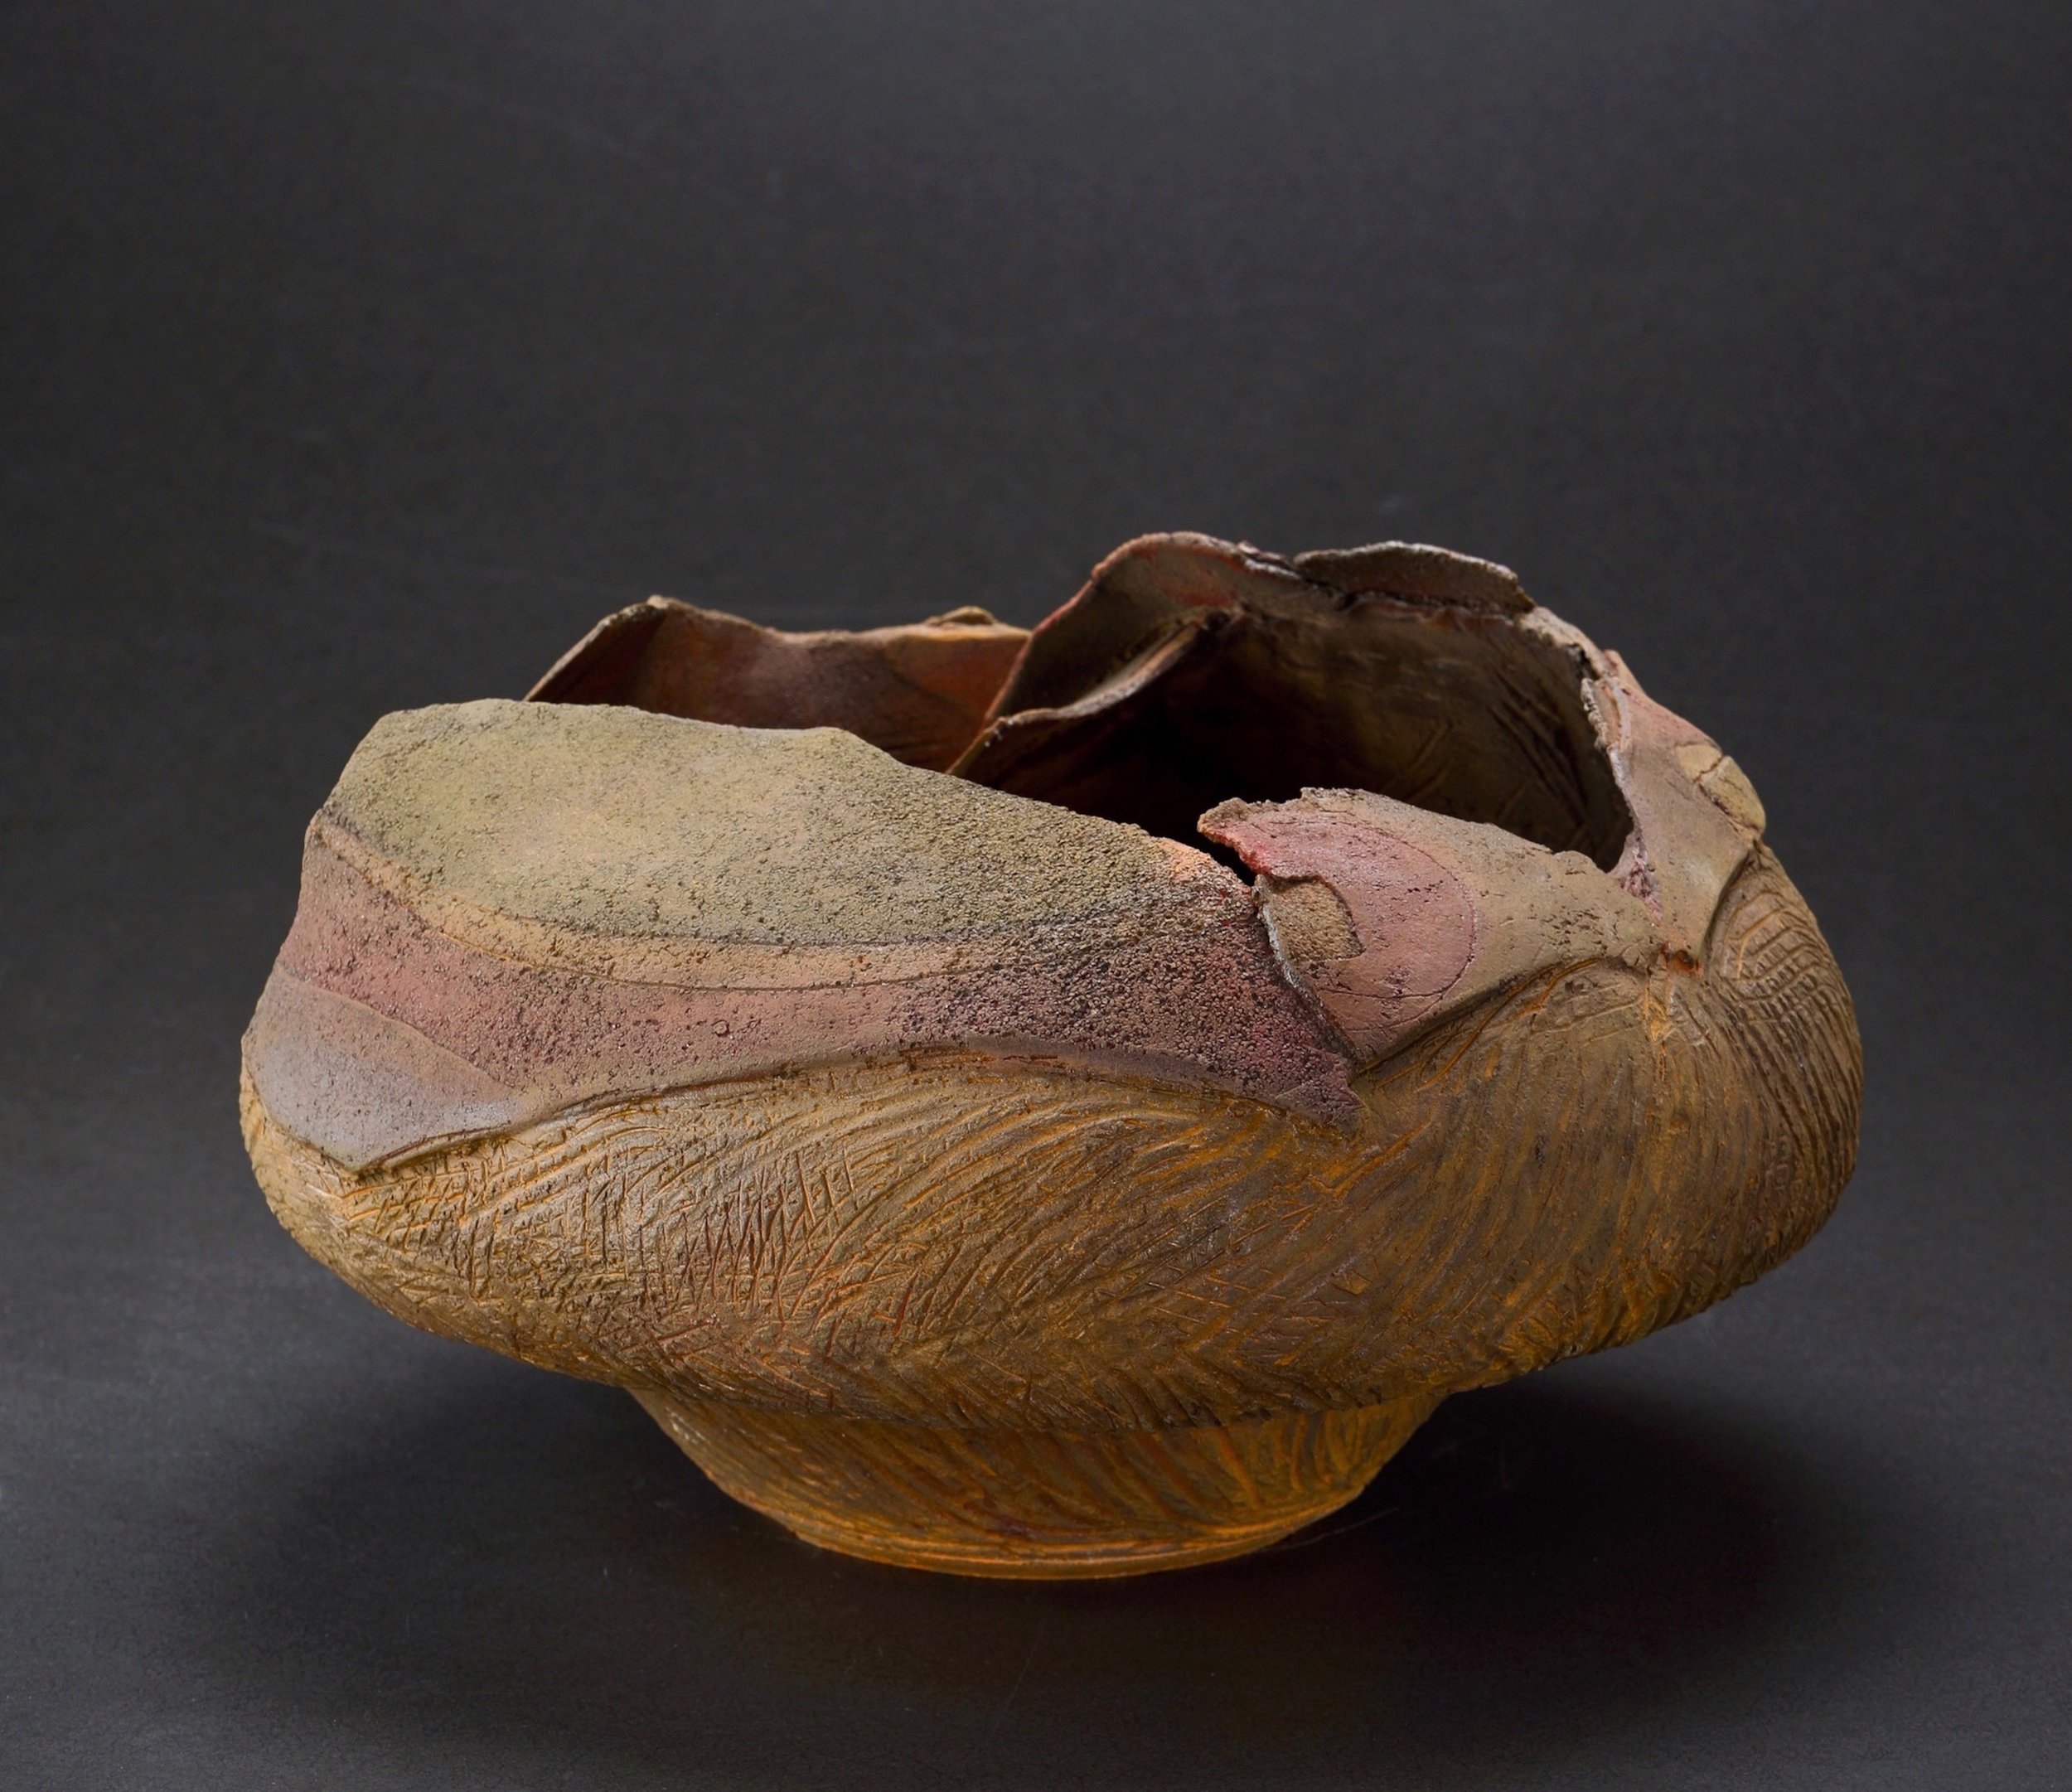  Mimi Howard,  Eclipsed Globe , unglazed stoneware, 20x12x11 